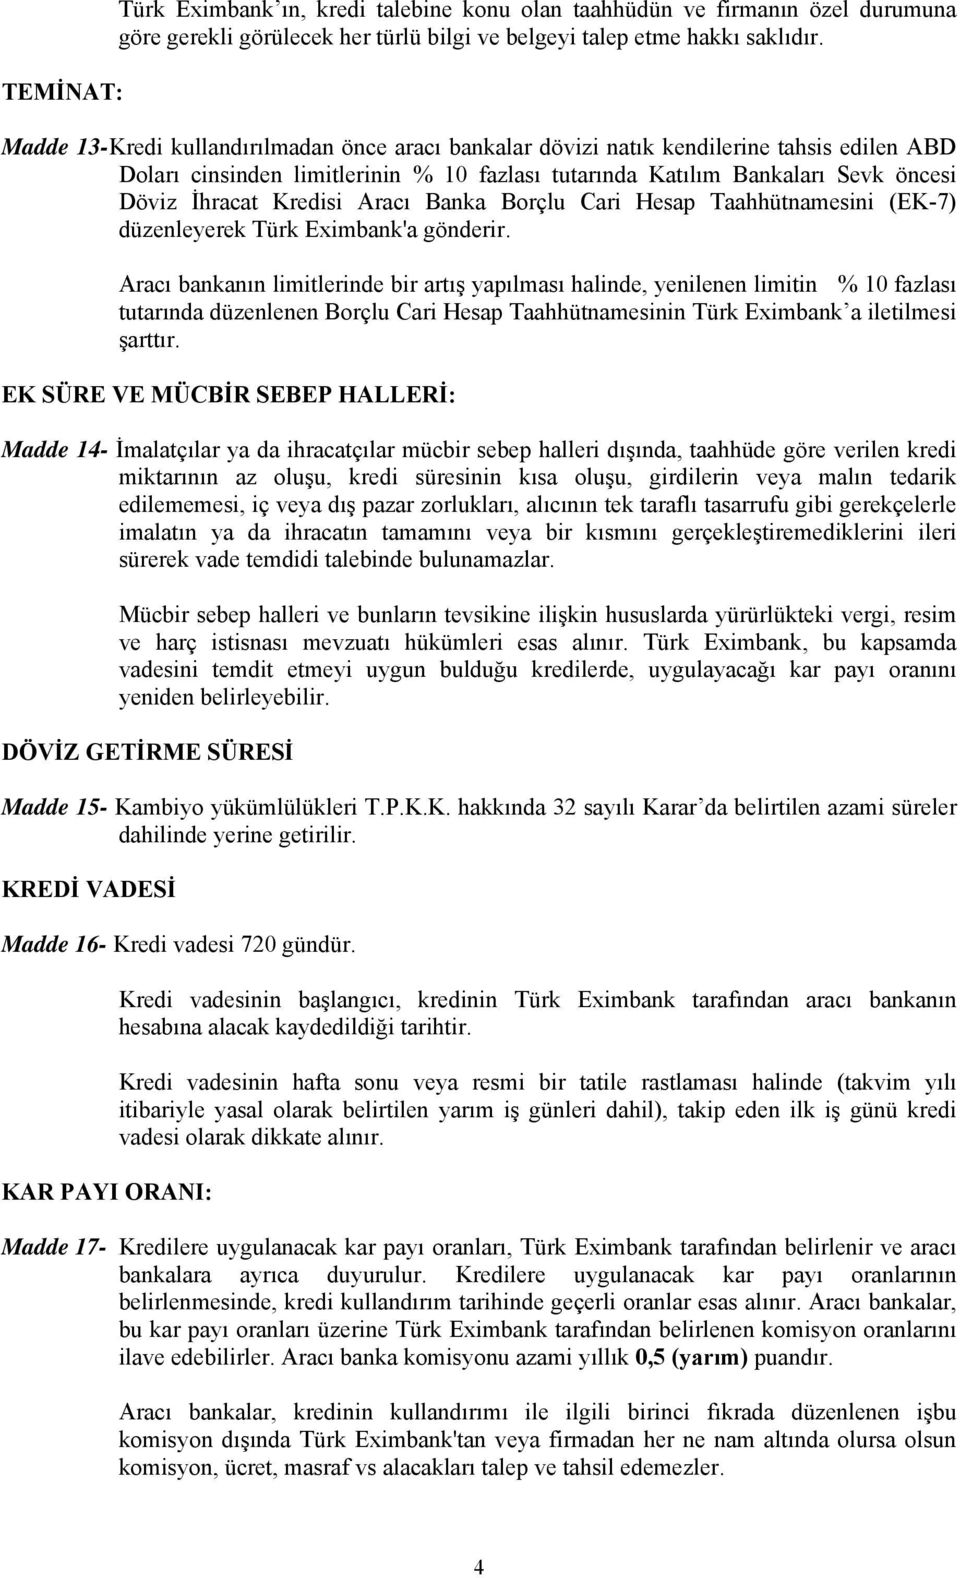 Aracı Banka Borçlu Cari Hesap Taahhütnamesini (EK-7) düzenleyerek Türk Eximbank'a gönderir.